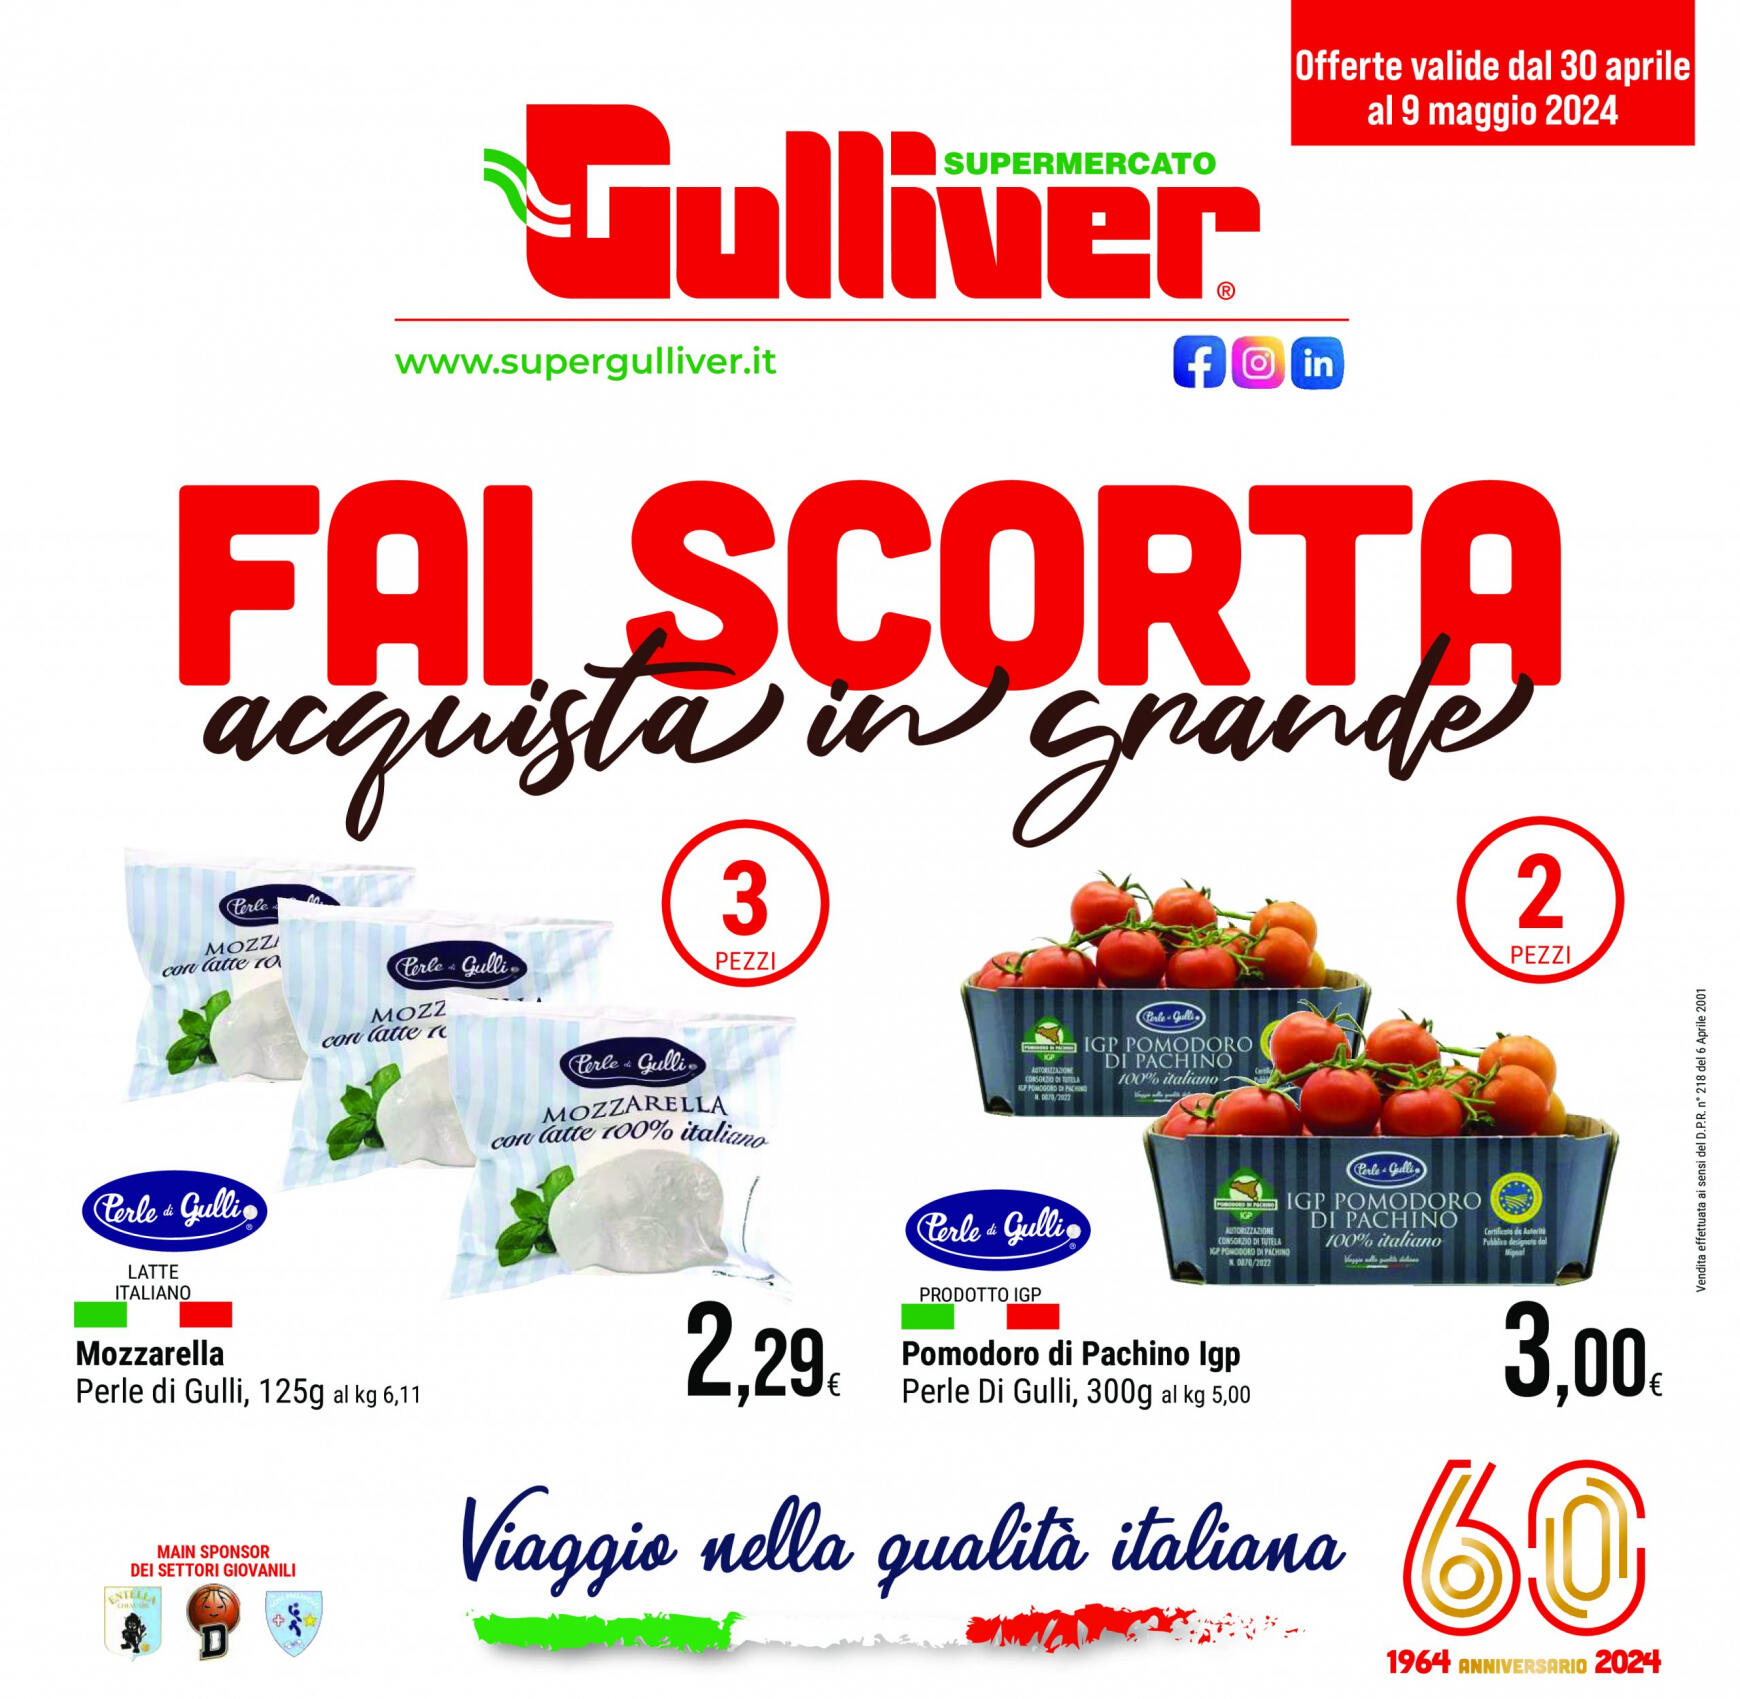 gulliver - Nuovo volantino Gulliver - Fai Scorta 30.04. - 09.05.